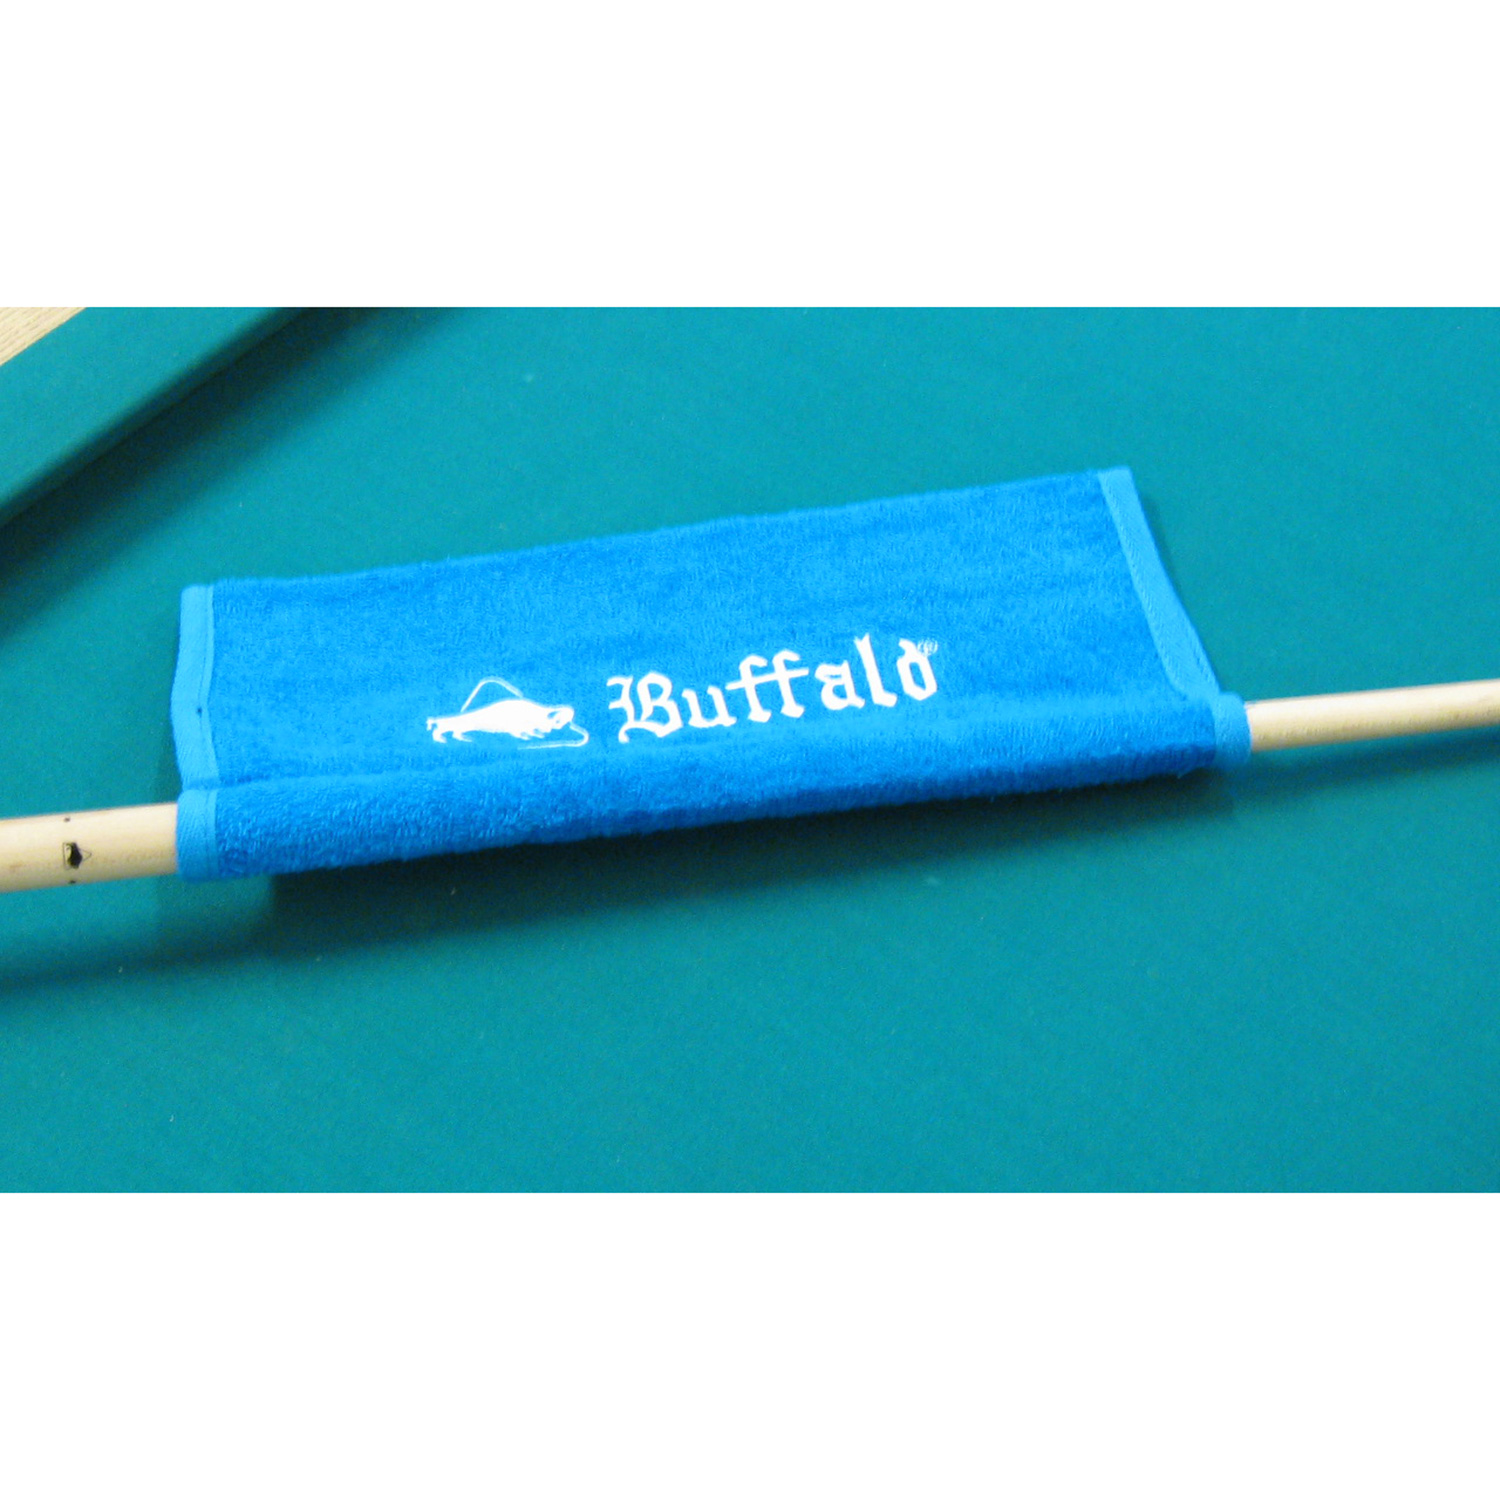 KA0206: Buffalo keu conditioner set